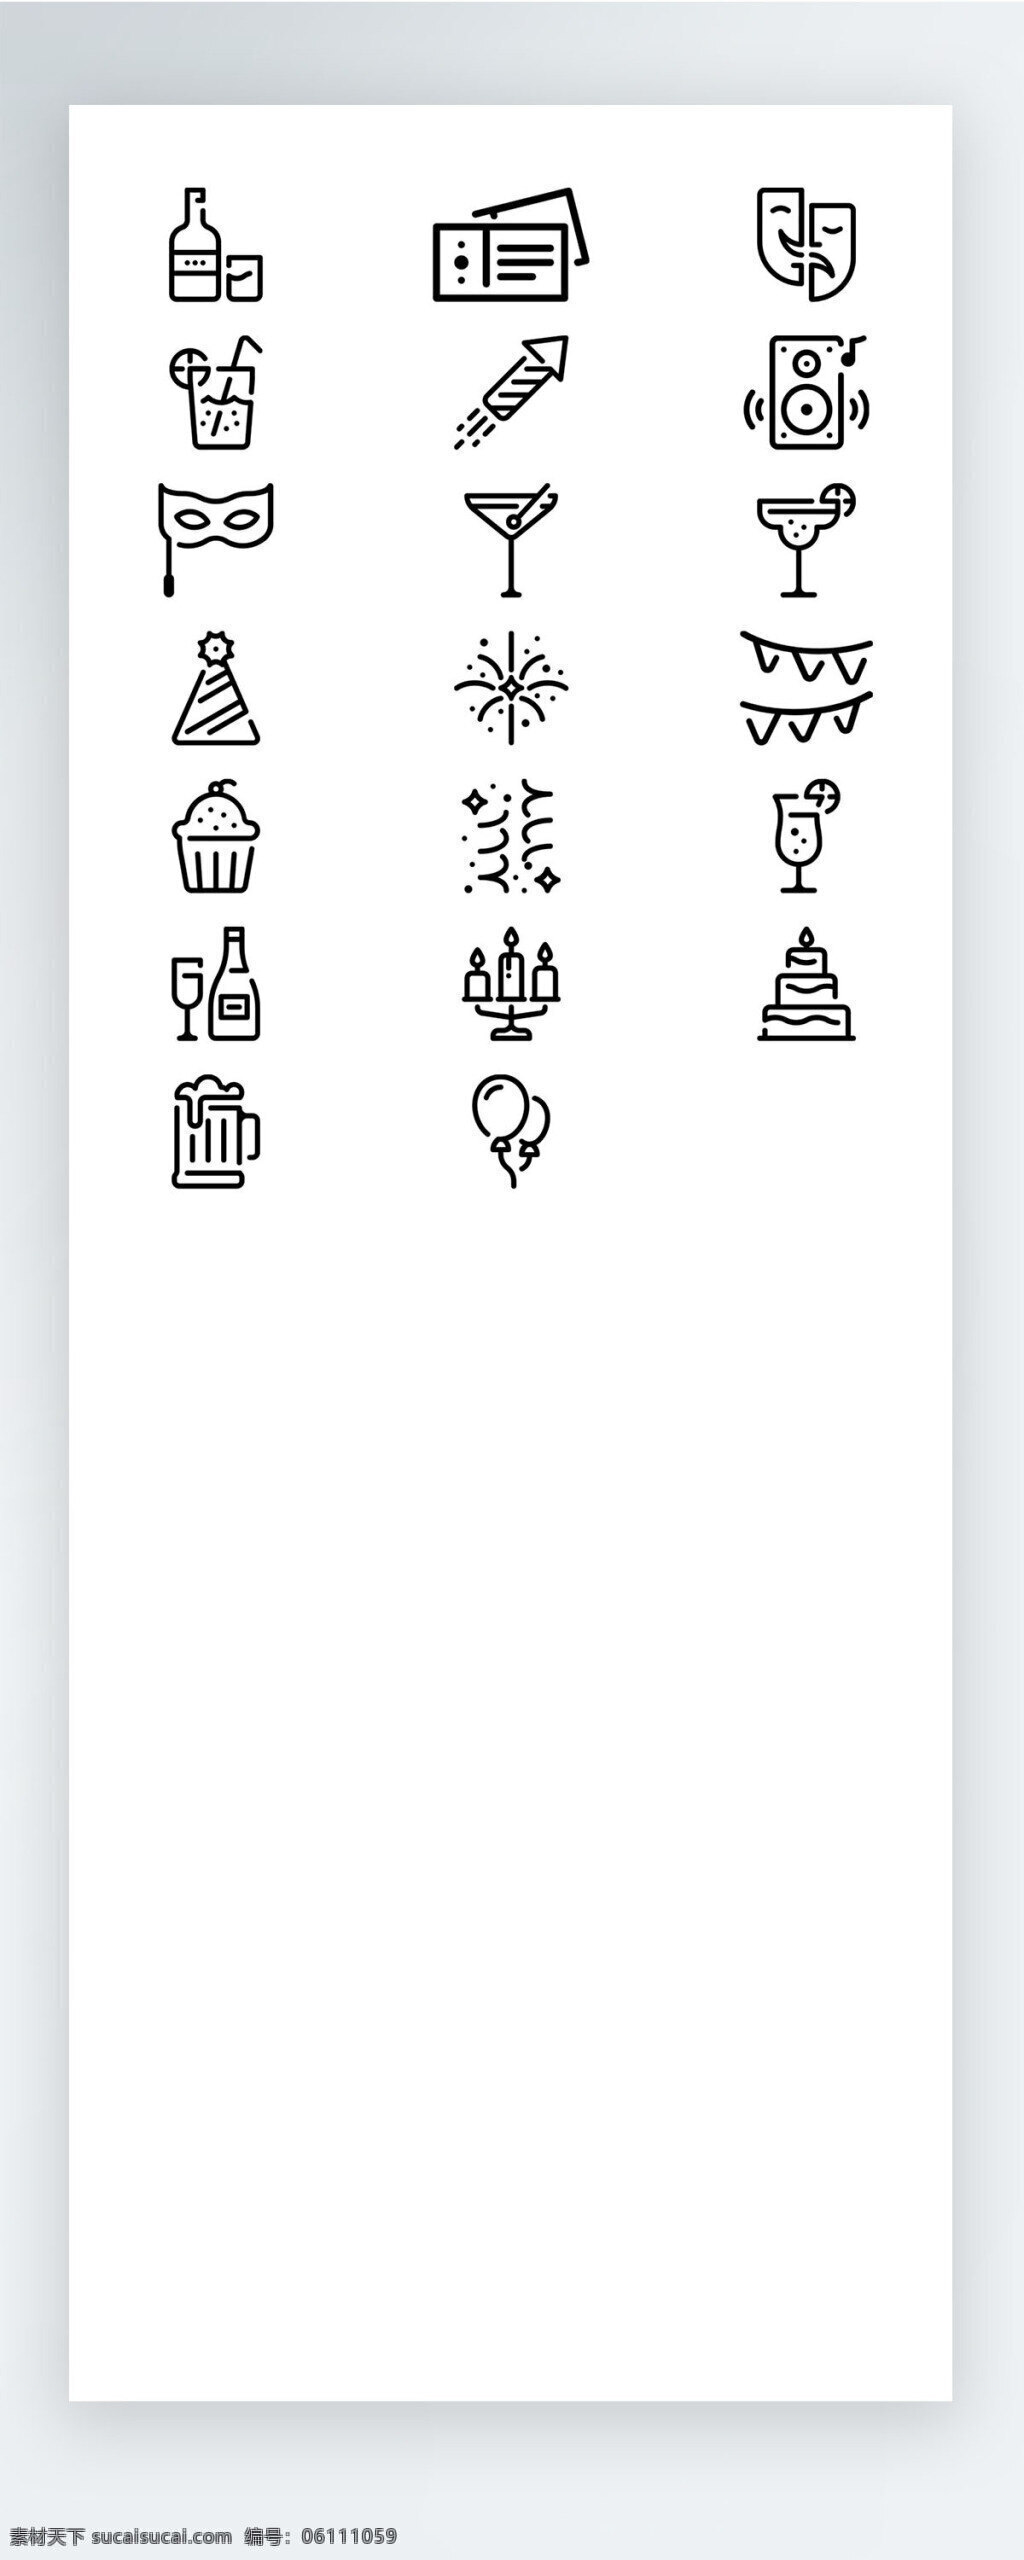 聚会 饮料 蛋糕 音乐 手机 ui 线性 拟 物 图标 矢量 icon icon图标 线稿 图标素材 线性拟物 社交 动物 娱乐 蜡烛